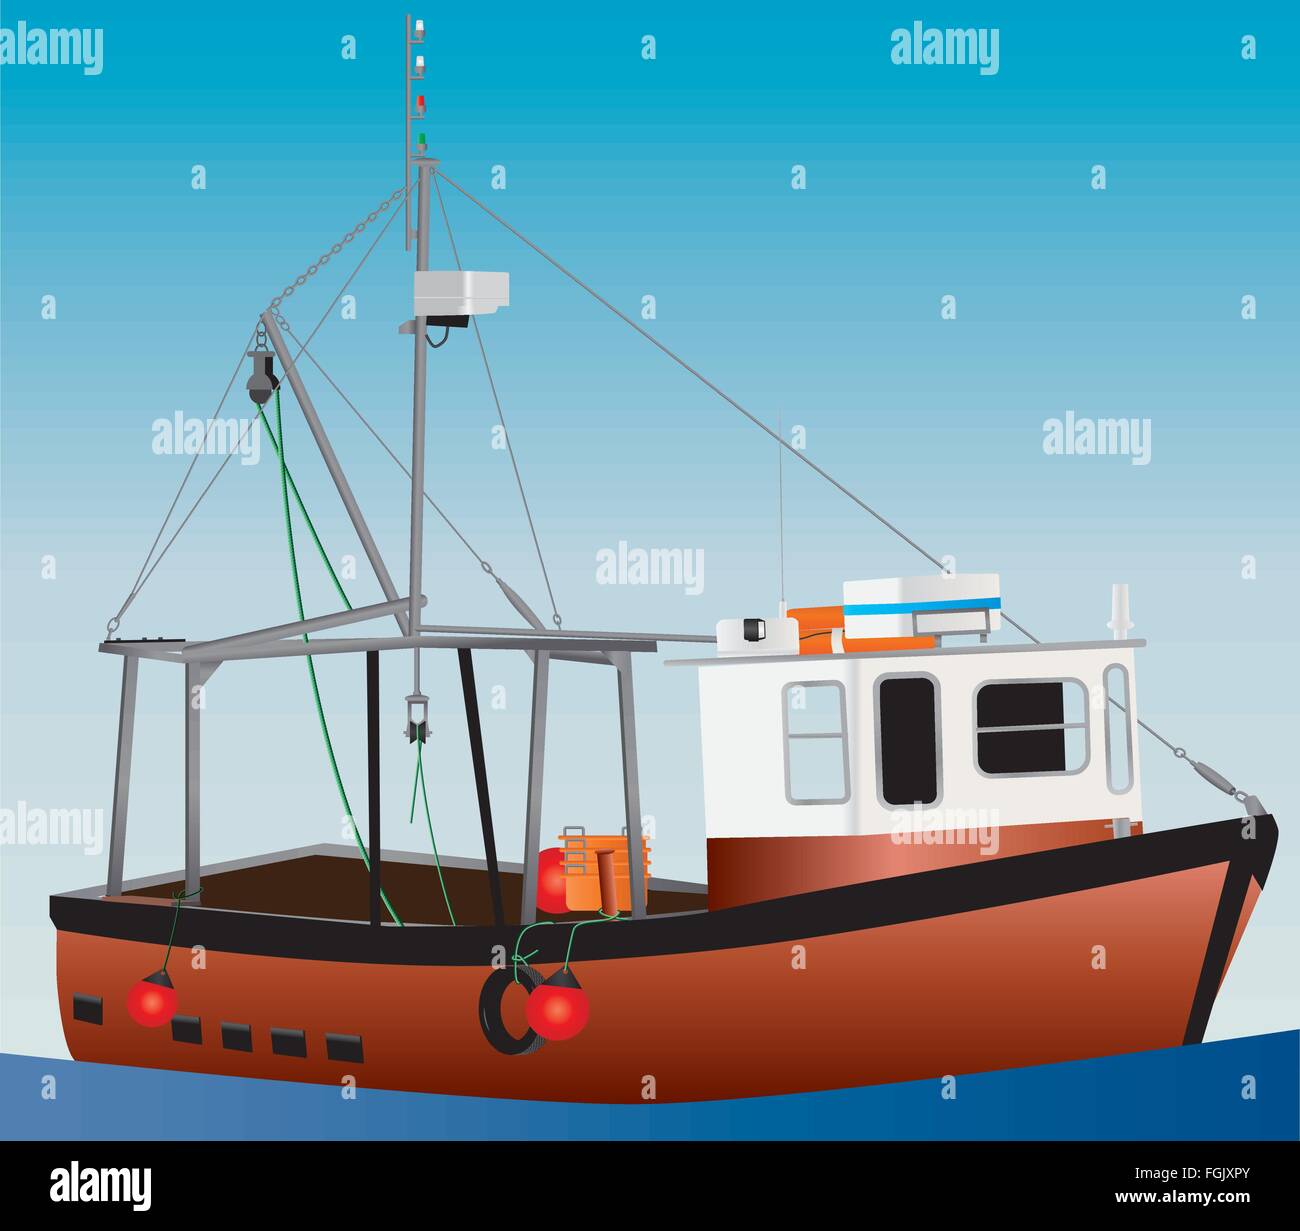 Una ilustración detallada de una naranja y blanco barco de pesca costera con redes de maquinillas y balsas salvavidas y un cielo azul de fondo sobre un mar en calma Ilustración del Vector